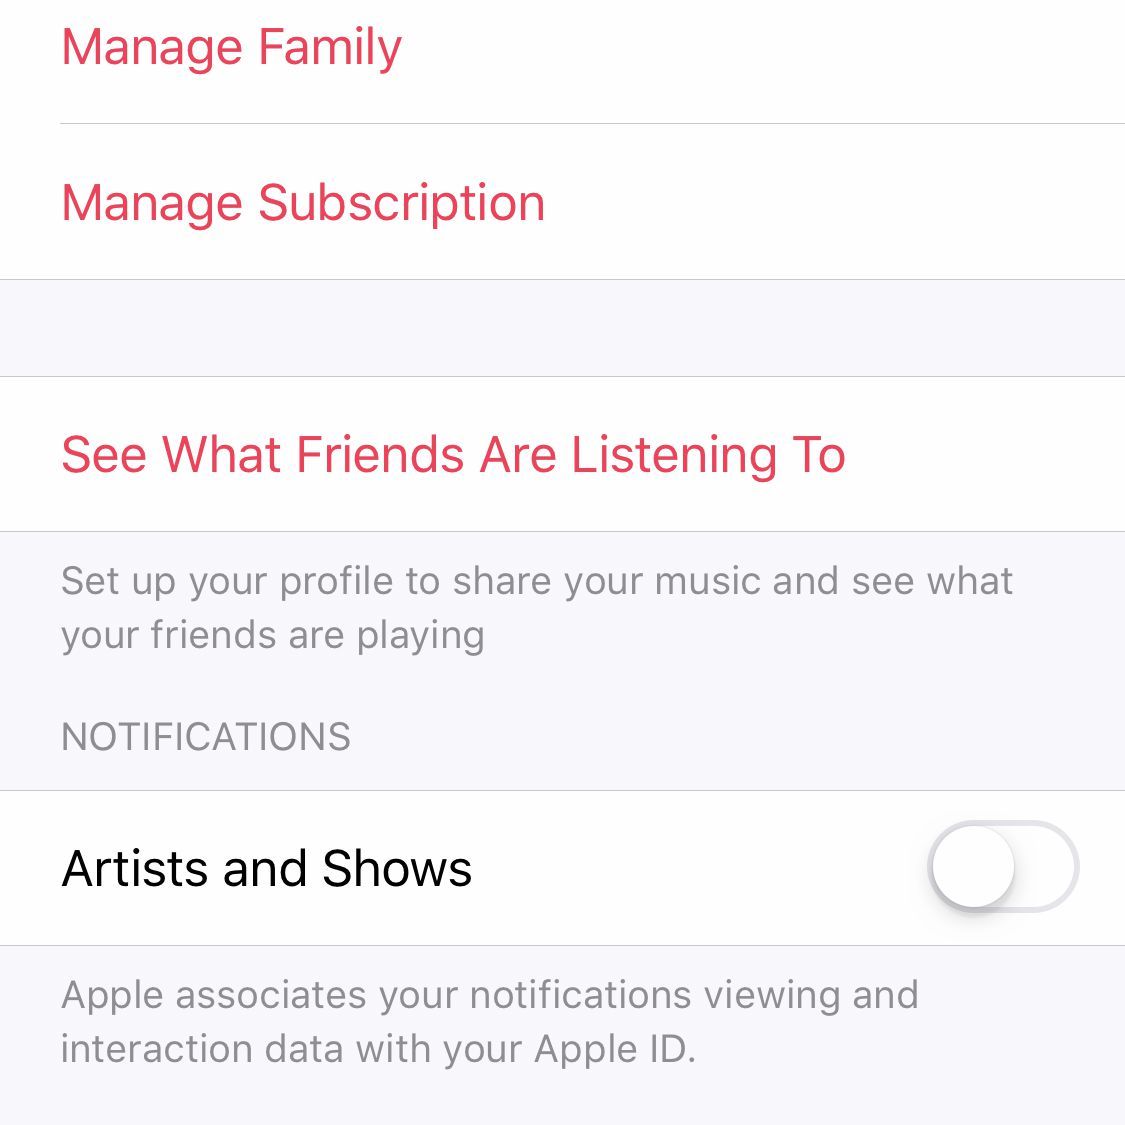 Скриншот экрана профиля в Apple Music на iPhone